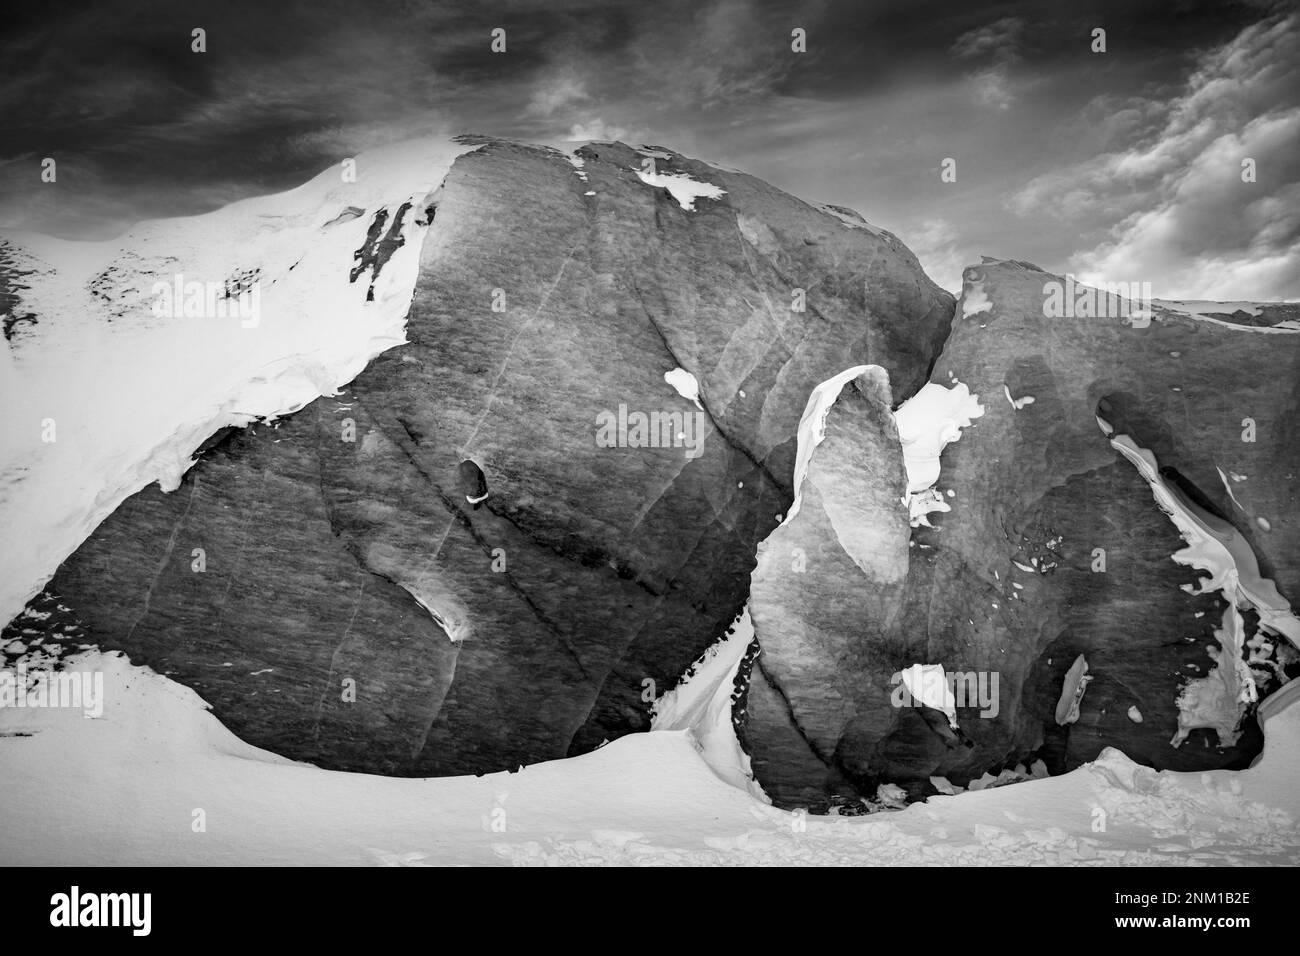 Photo en noir et blanc à contraste élevé d'une grande formation de roche sur un sommet de montagne enneigé Banque D'Images